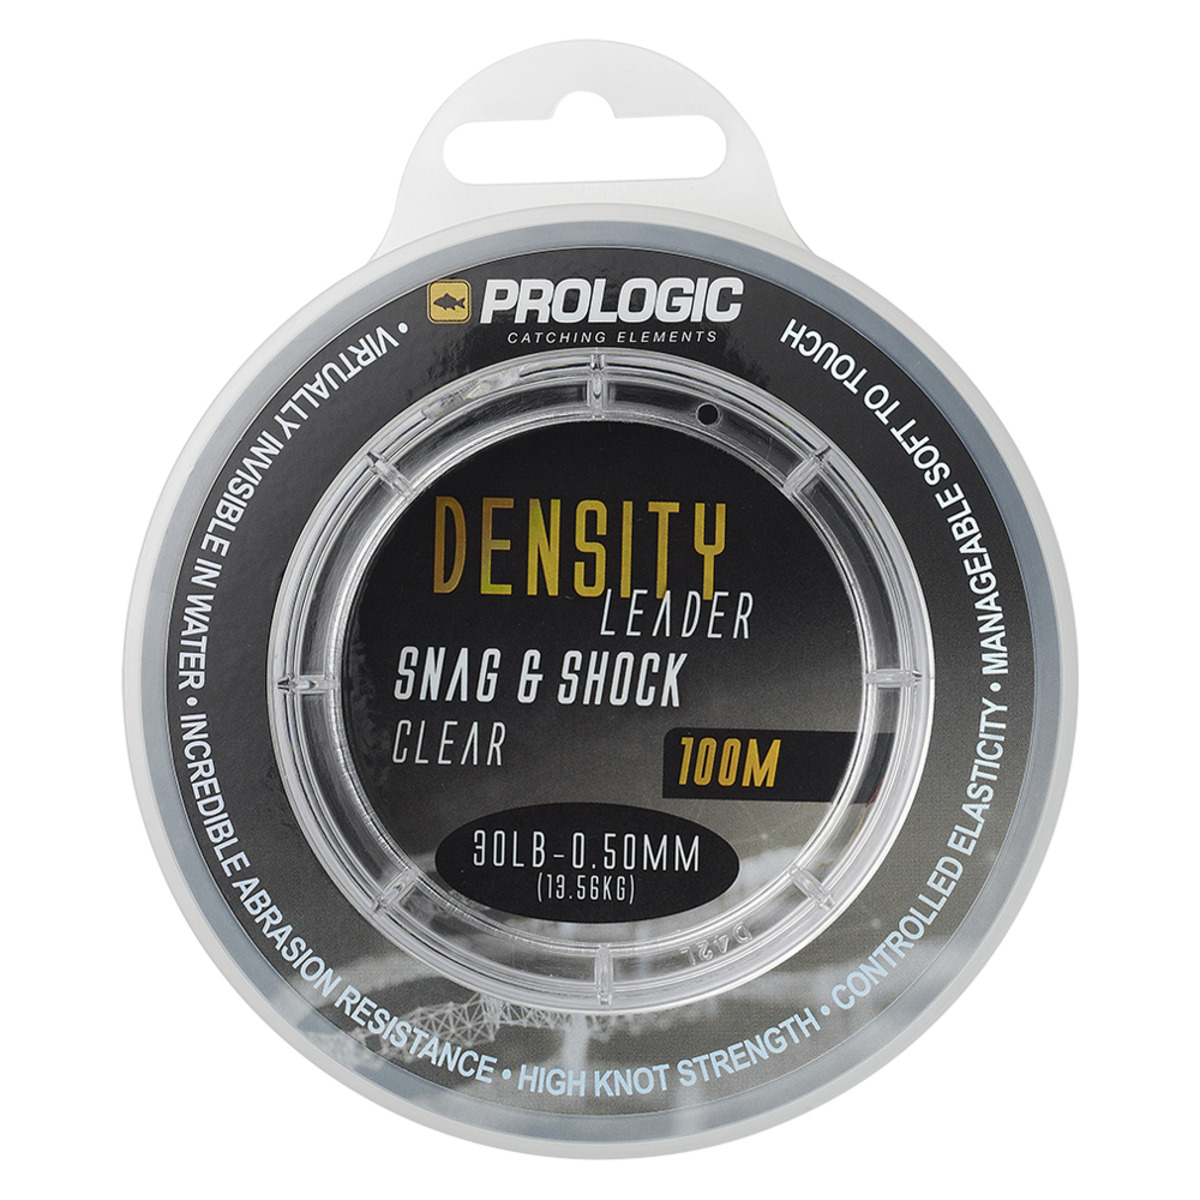 Prologic Density Snag & Shock Leader 100m - 0.60MM 20.41KG 45LBS CLEAR